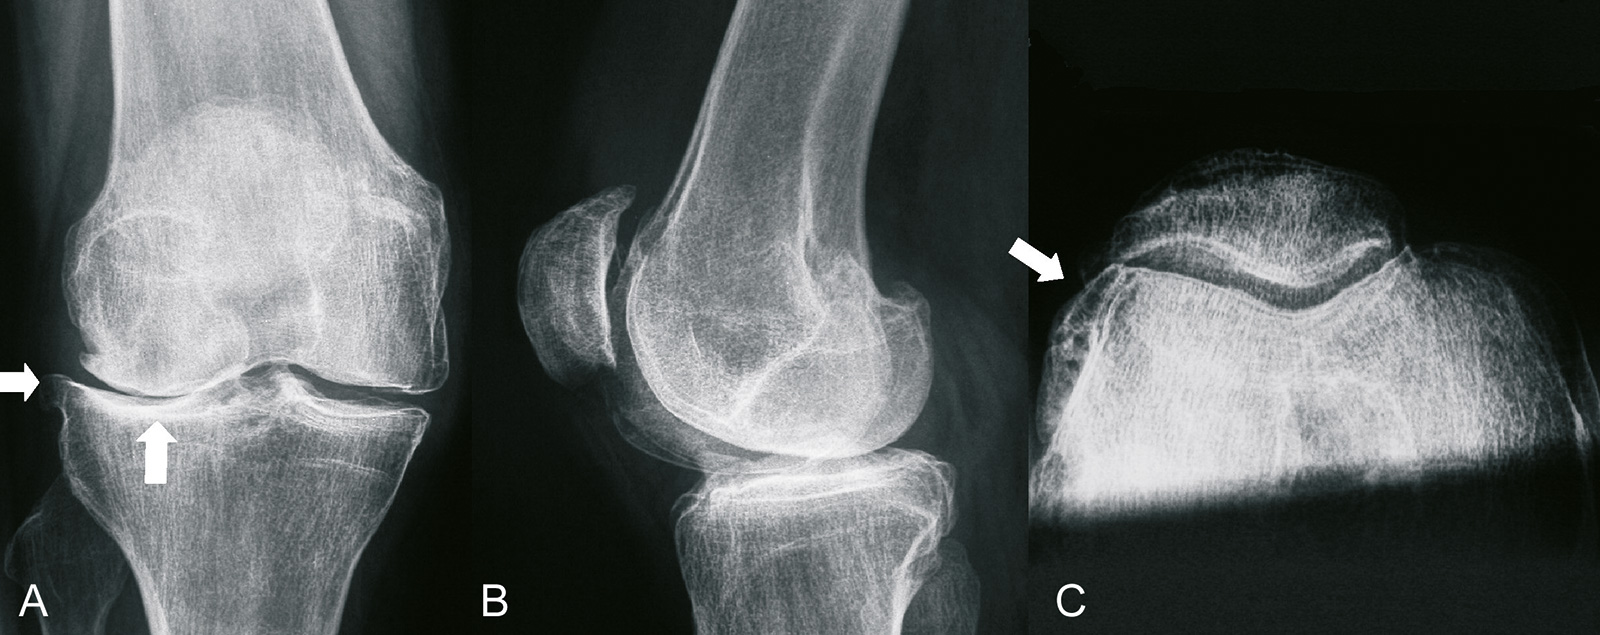 Abb. 1-30: Radiologische Zeichen einer Arthrose (A-C): Gelenkspaltverschmälerung, subchondrale Sklerosierung, Geröllzysten, laterale Osteophyten (A), u.a. entlang des lateralen Femurkondylus (C)